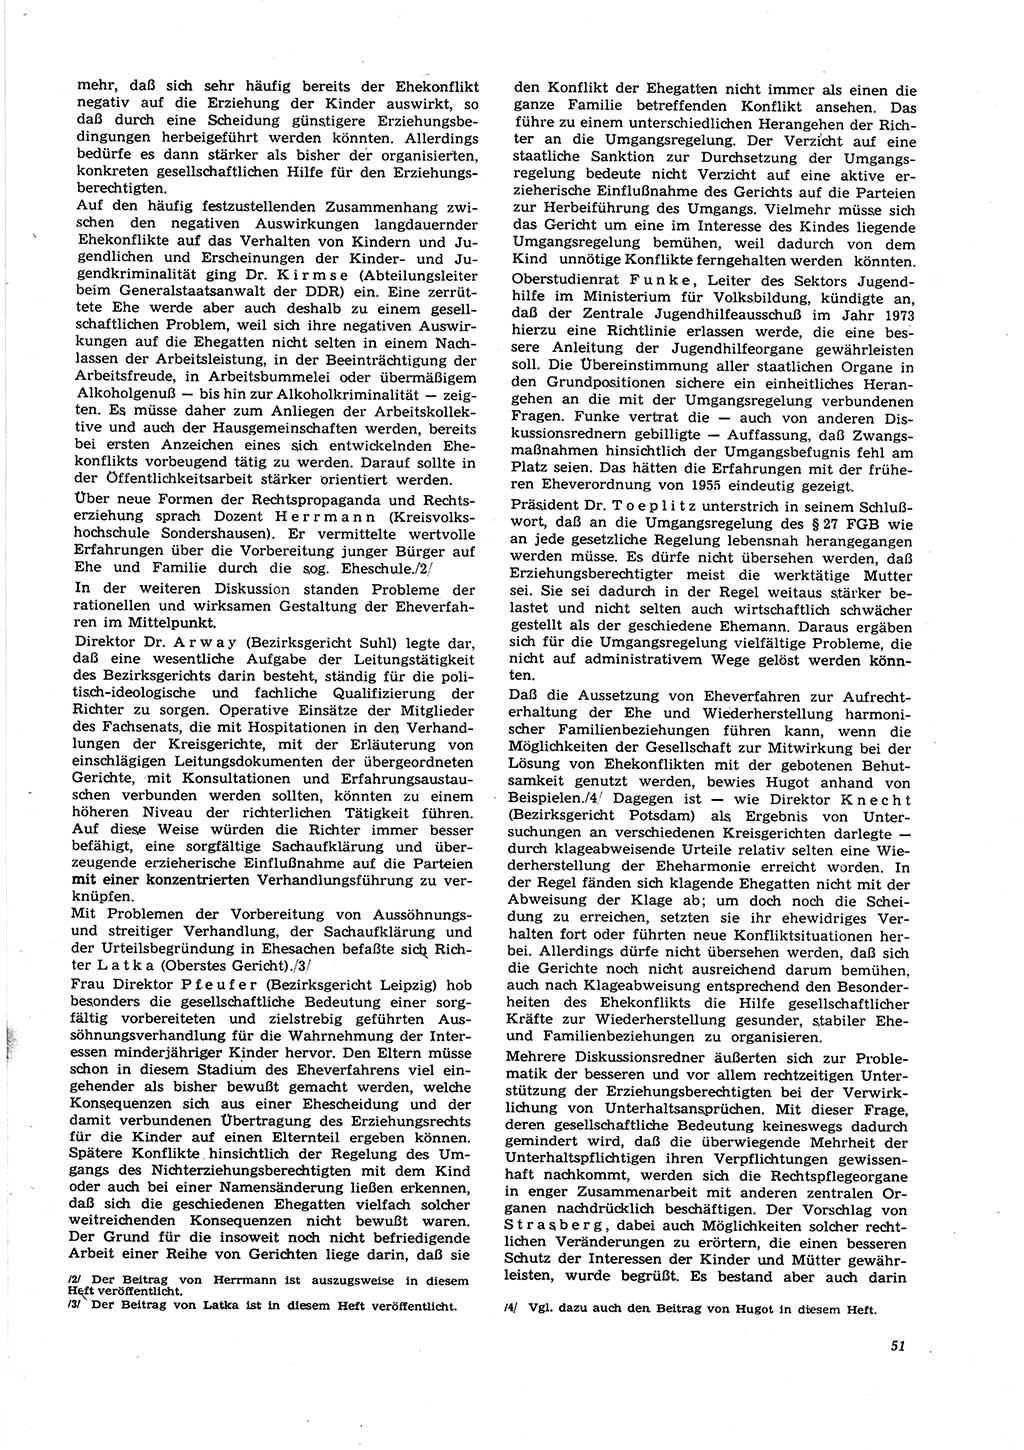 Neue Justiz (NJ), Zeitschrift für Recht und Rechtswissenschaft [Deutsche Demokratische Republik (DDR)], 27. Jahrgang 1973, Seite 51 (NJ DDR 1973, S. 51)